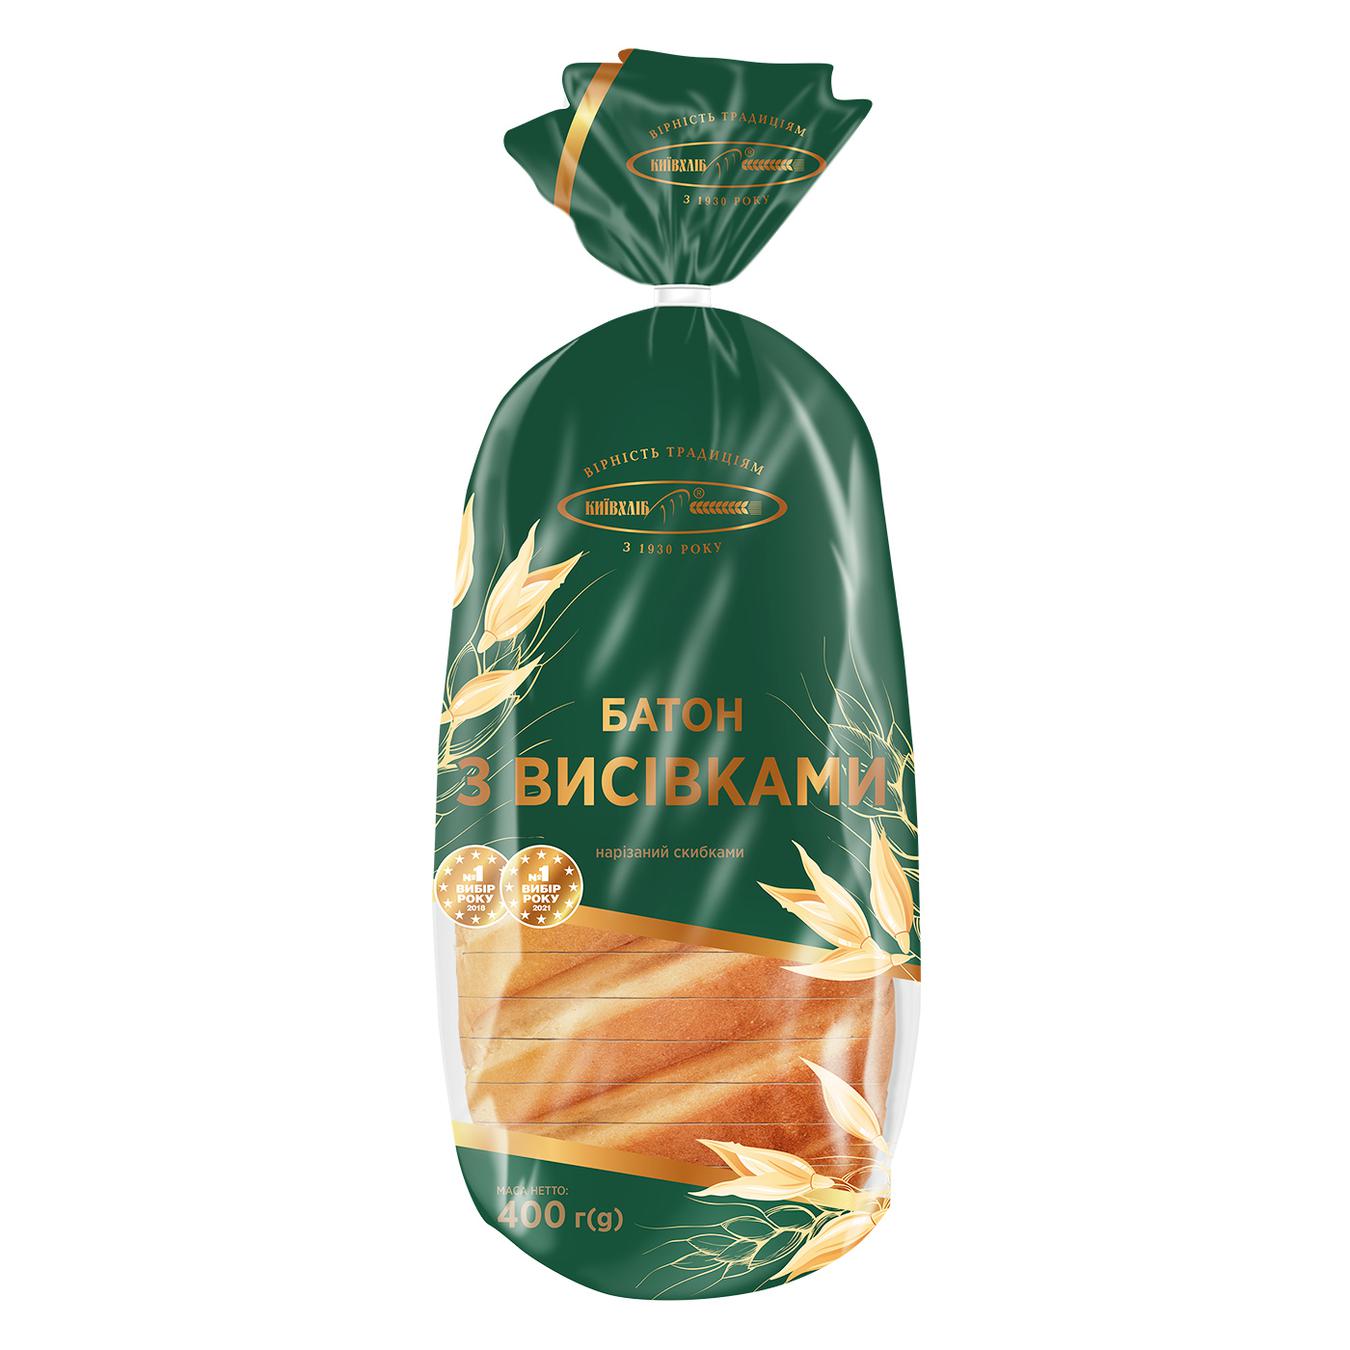 Батон з висівками Київхліб нарізаний скибками упаковка 400г